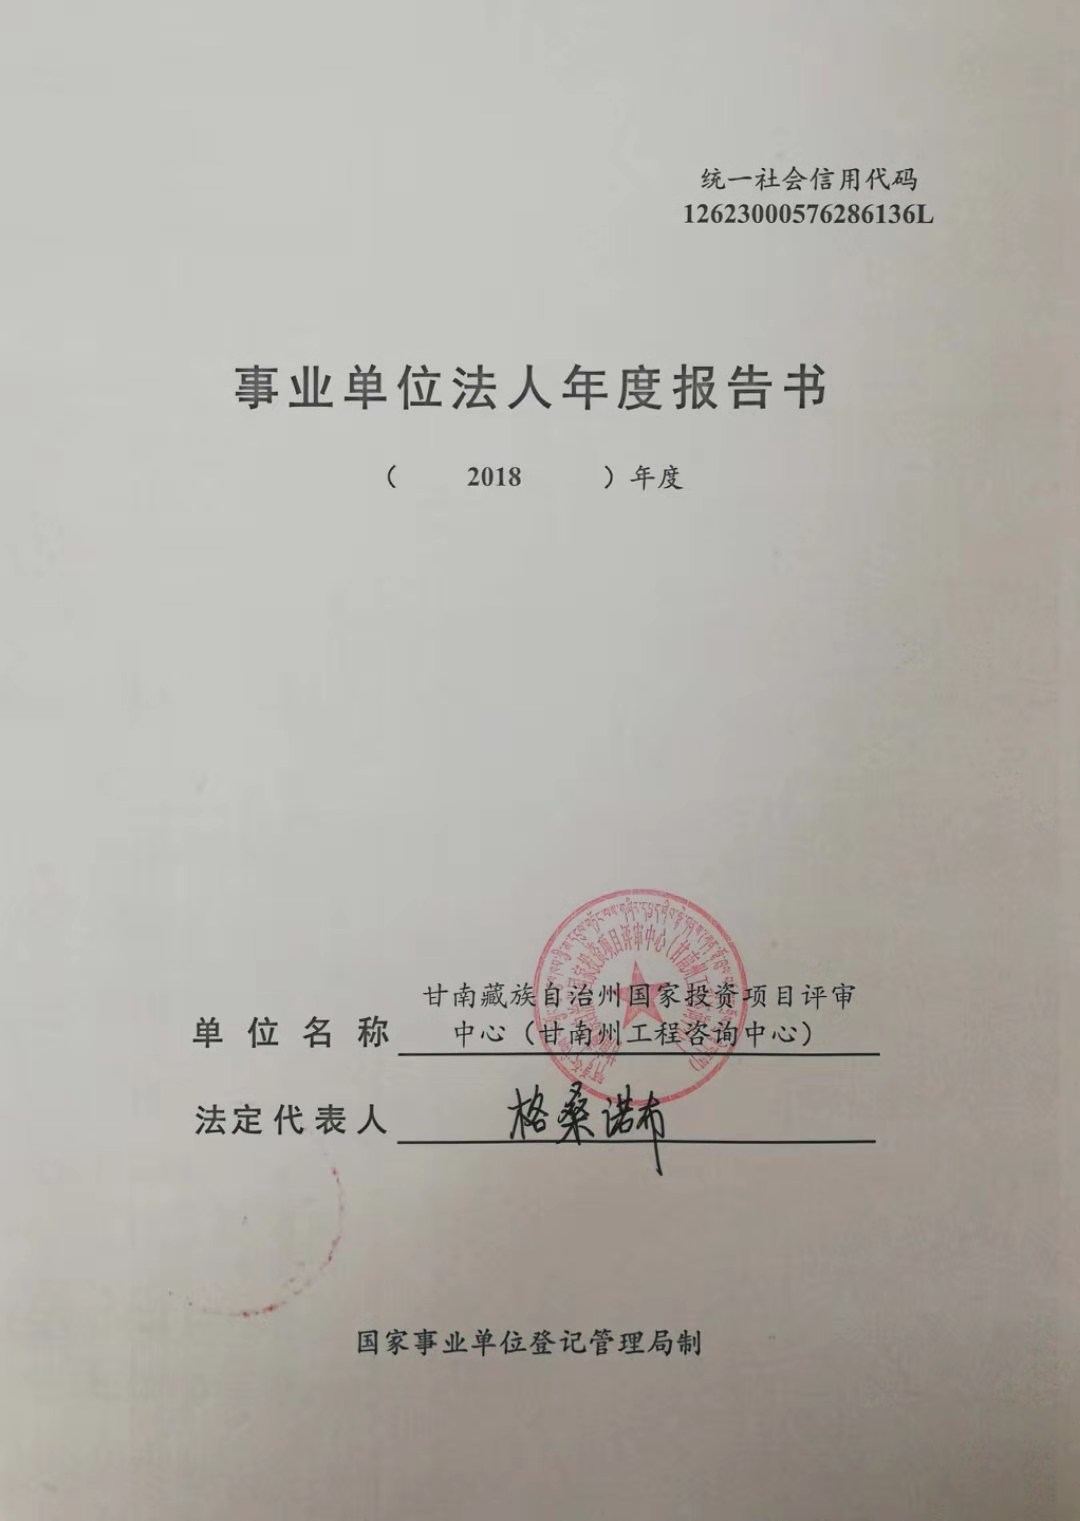 关于甘南藏族自治州国家投资项目评审中心（甘南州工程咨询中心）事业单位法人2018年度报告书的公示